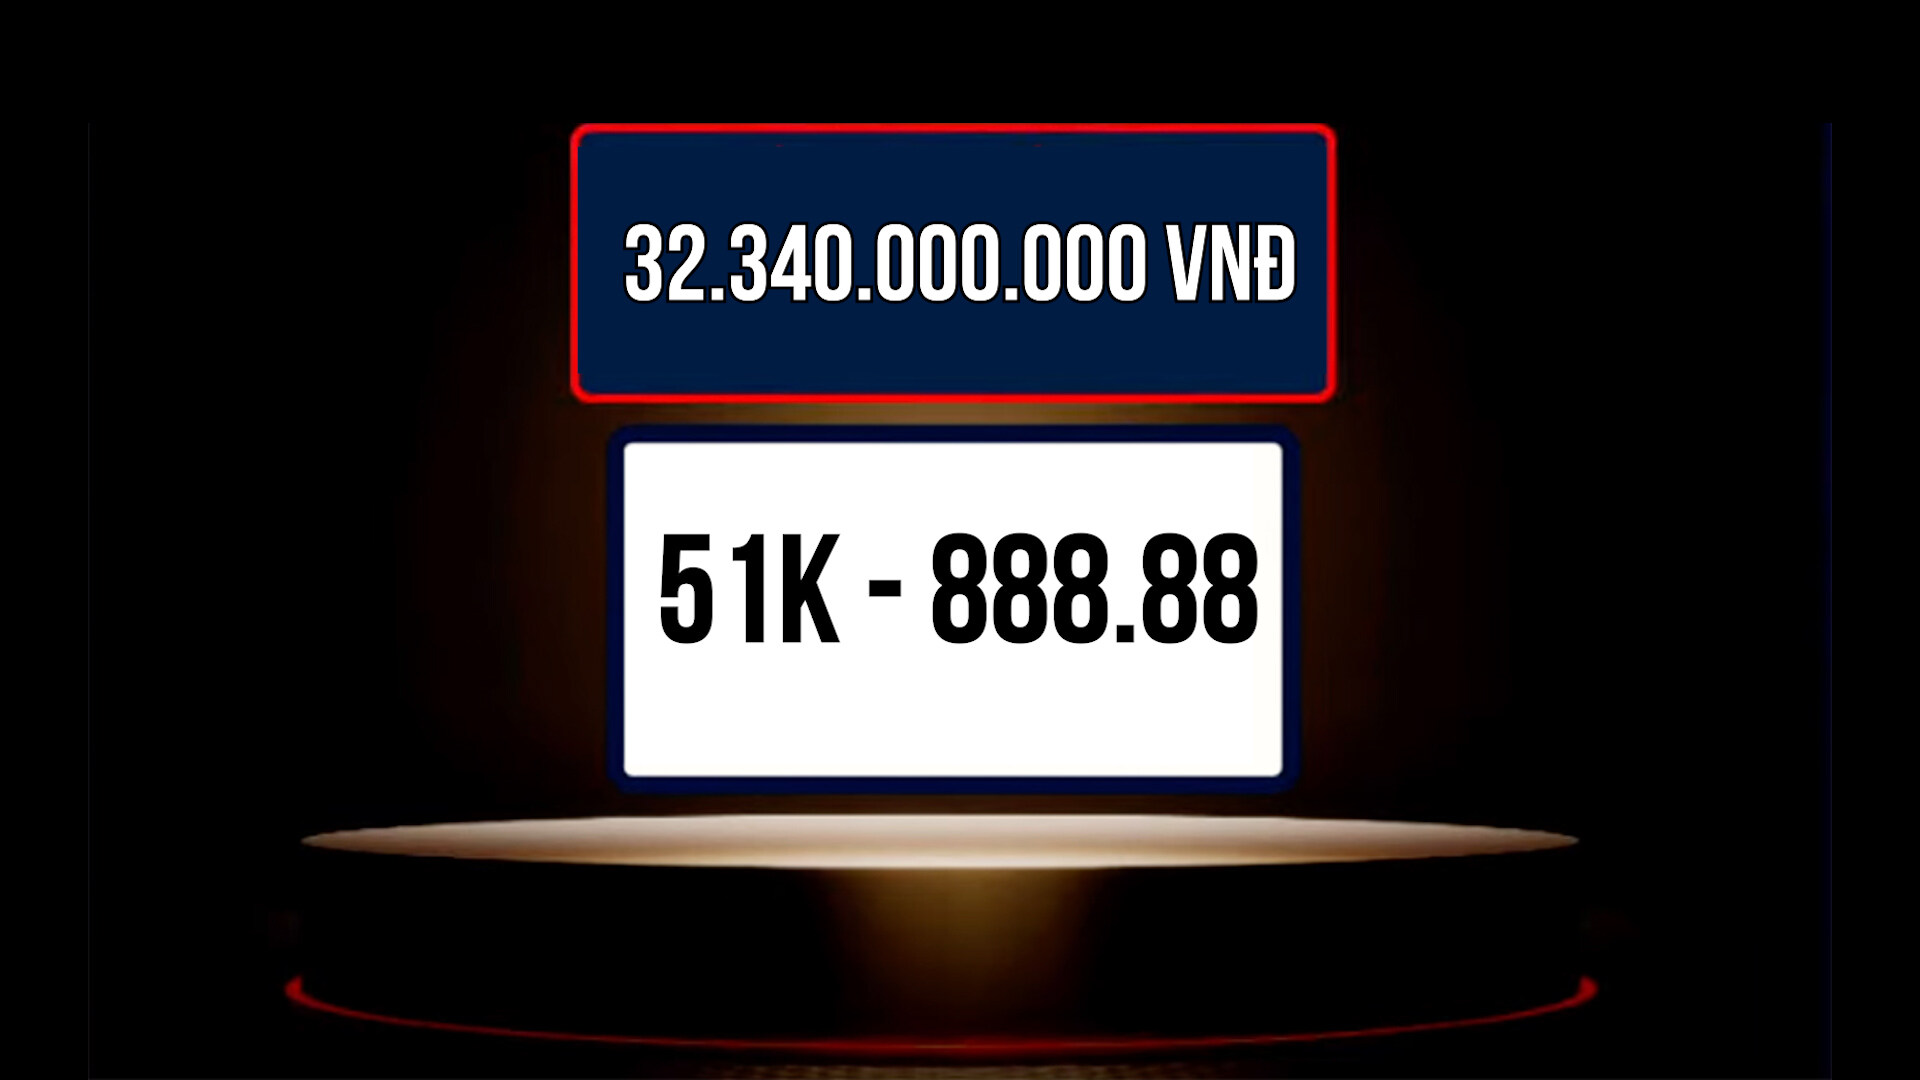 Biển số TP. HCM 51K-888.88 (32,34 tỷ đồng) là biển số được trả giá cao nhất từ trước đến nay